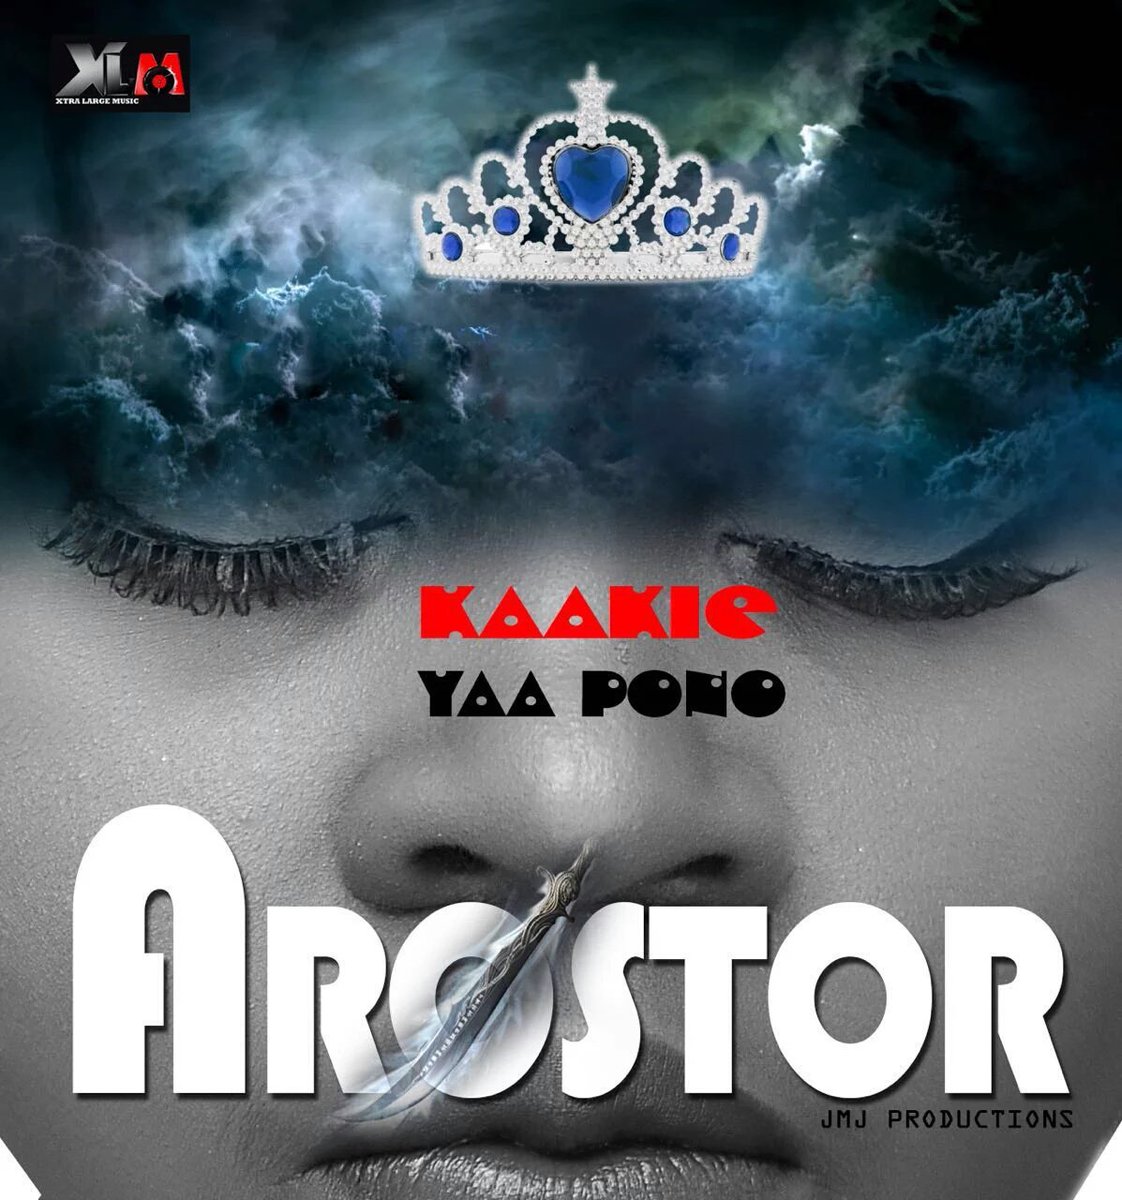 Kaakie – Arostor ft Yaa Pono (Prod By JMJ)